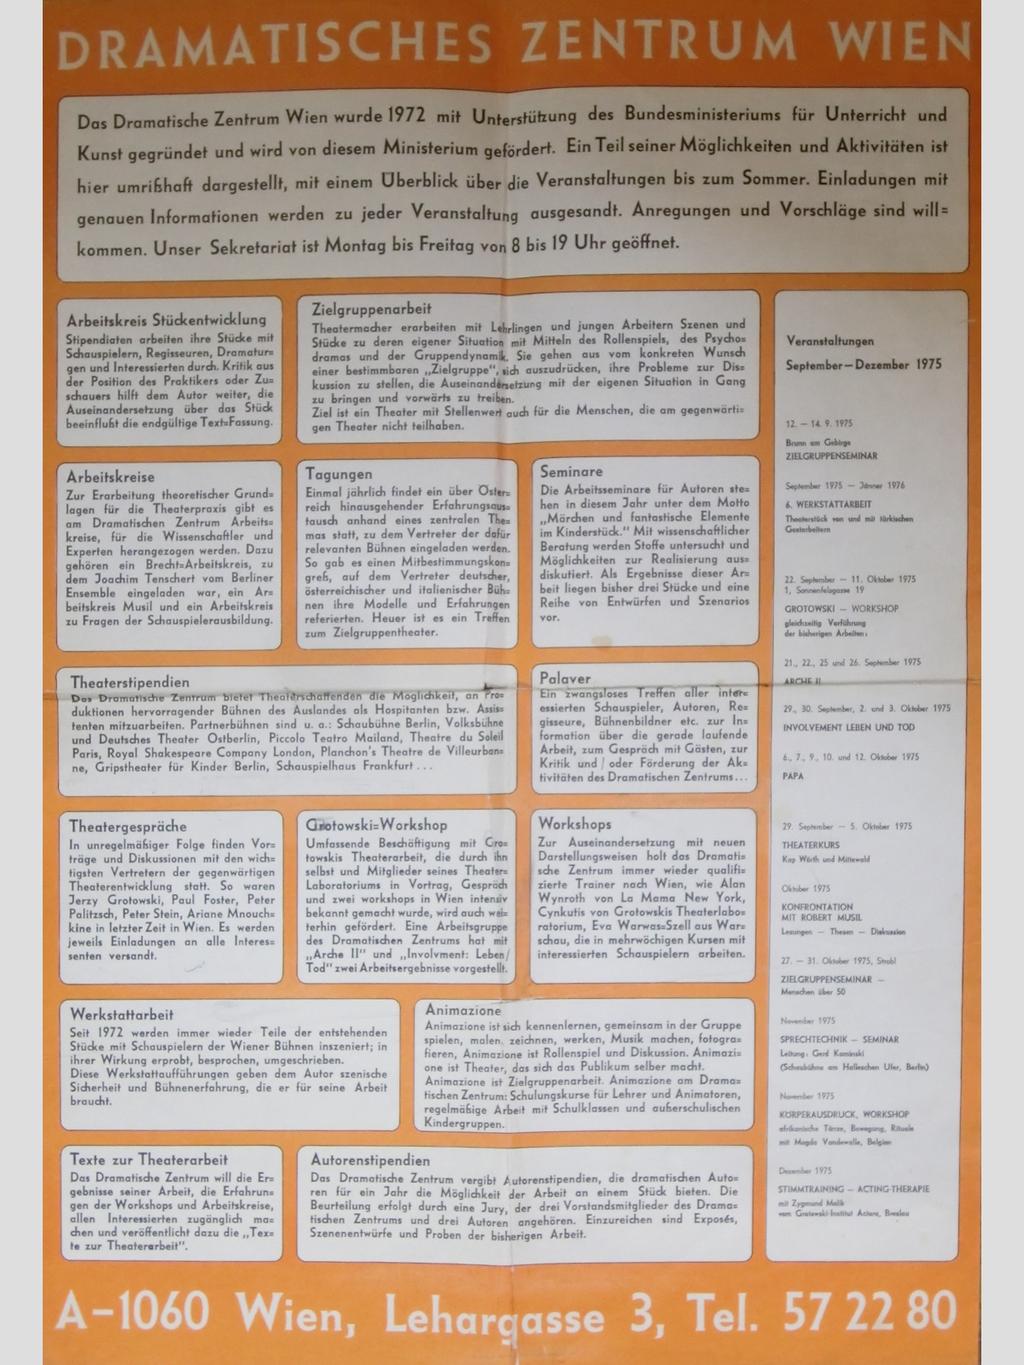 Abbildung 5: Plakat des Dramatischen Zentrums 1975 (Sammlung Dramatisches Zentrum) Es gibt Auskunft über Tätigkeitsbereiche und Aktivitäten des Dramatischen